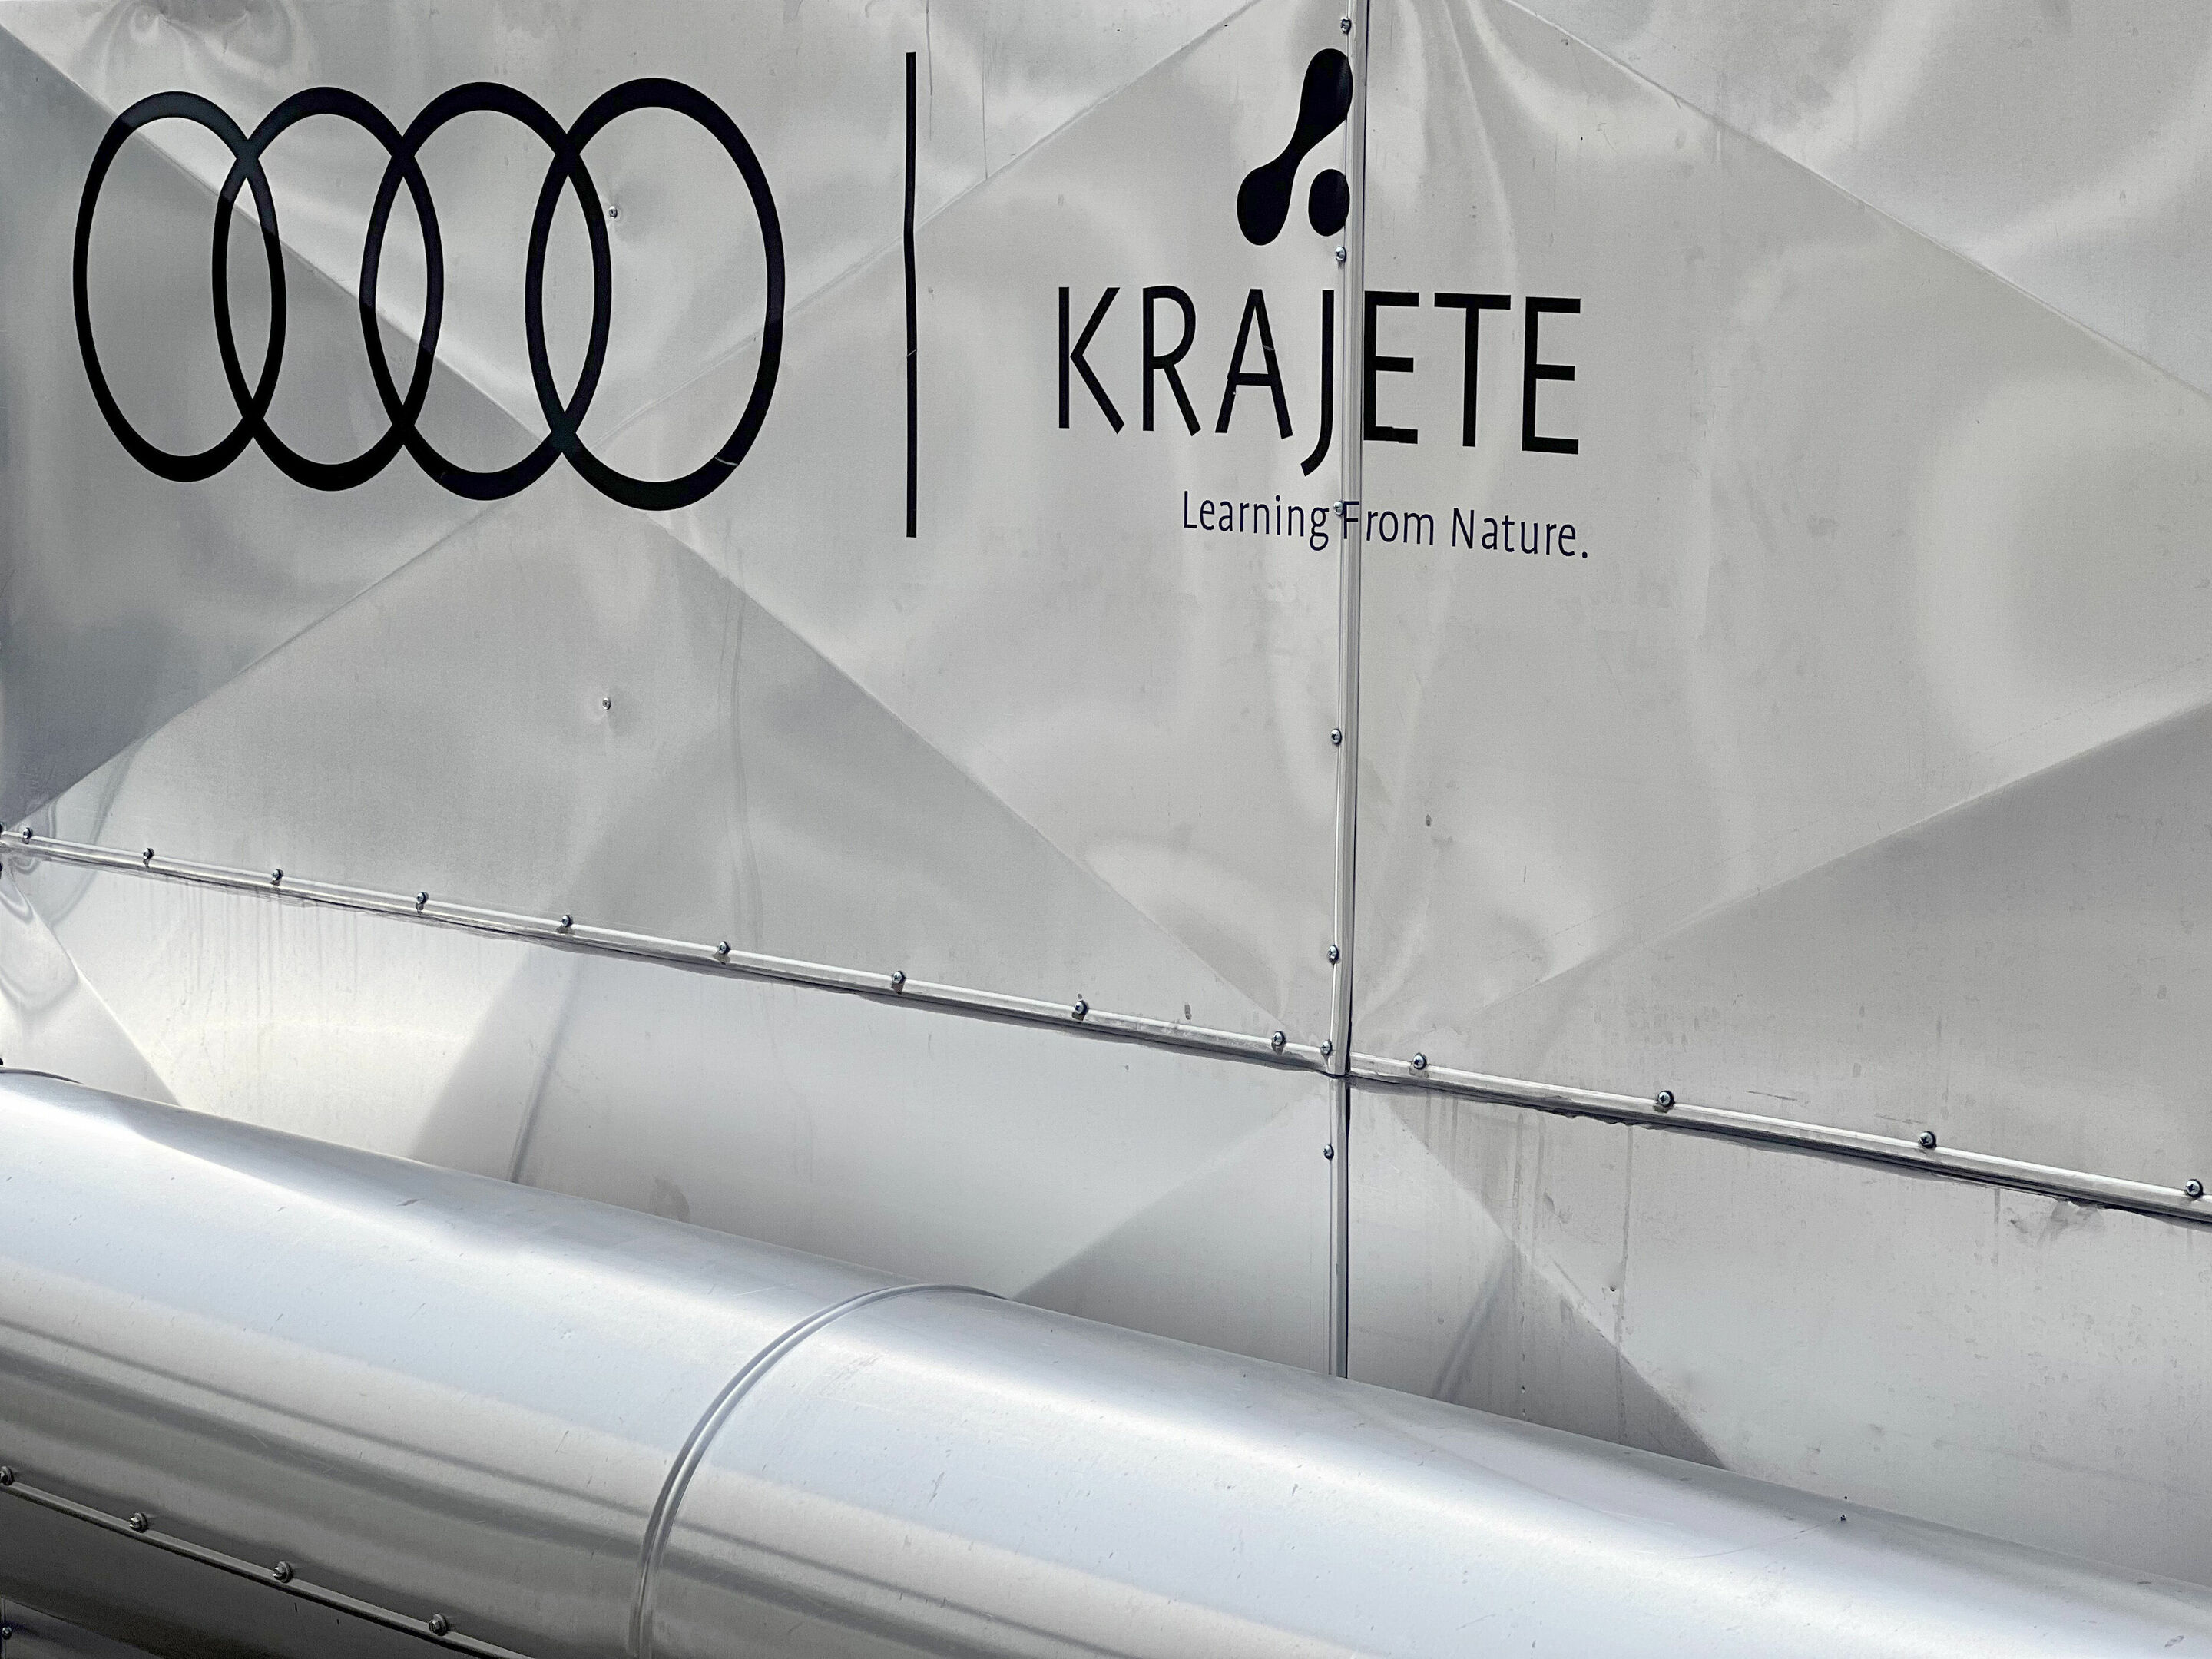 Audi und Krajete filtern CO2 aus der Luft